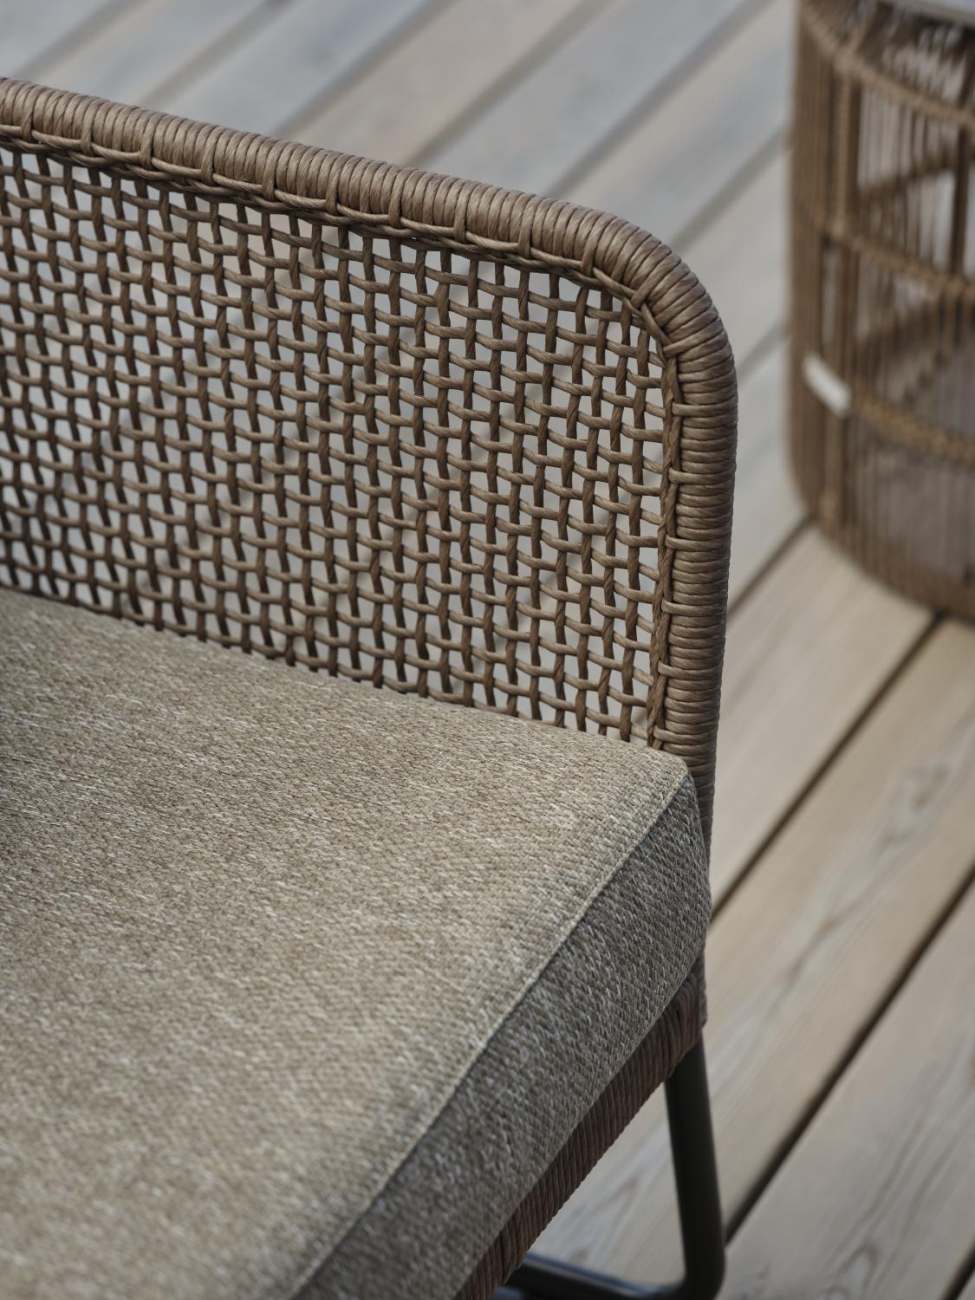 Das Gartensofa Pors überzeugt mit seinem modernen Design. Gefertigt wurde er aus Rattan, welcher einen braunen Farbton besitzt. Das Gestell ist aus Metall und hat eine schwarze Farbe. Die Sitzhöhe des Sofas beträgt 43 cm.